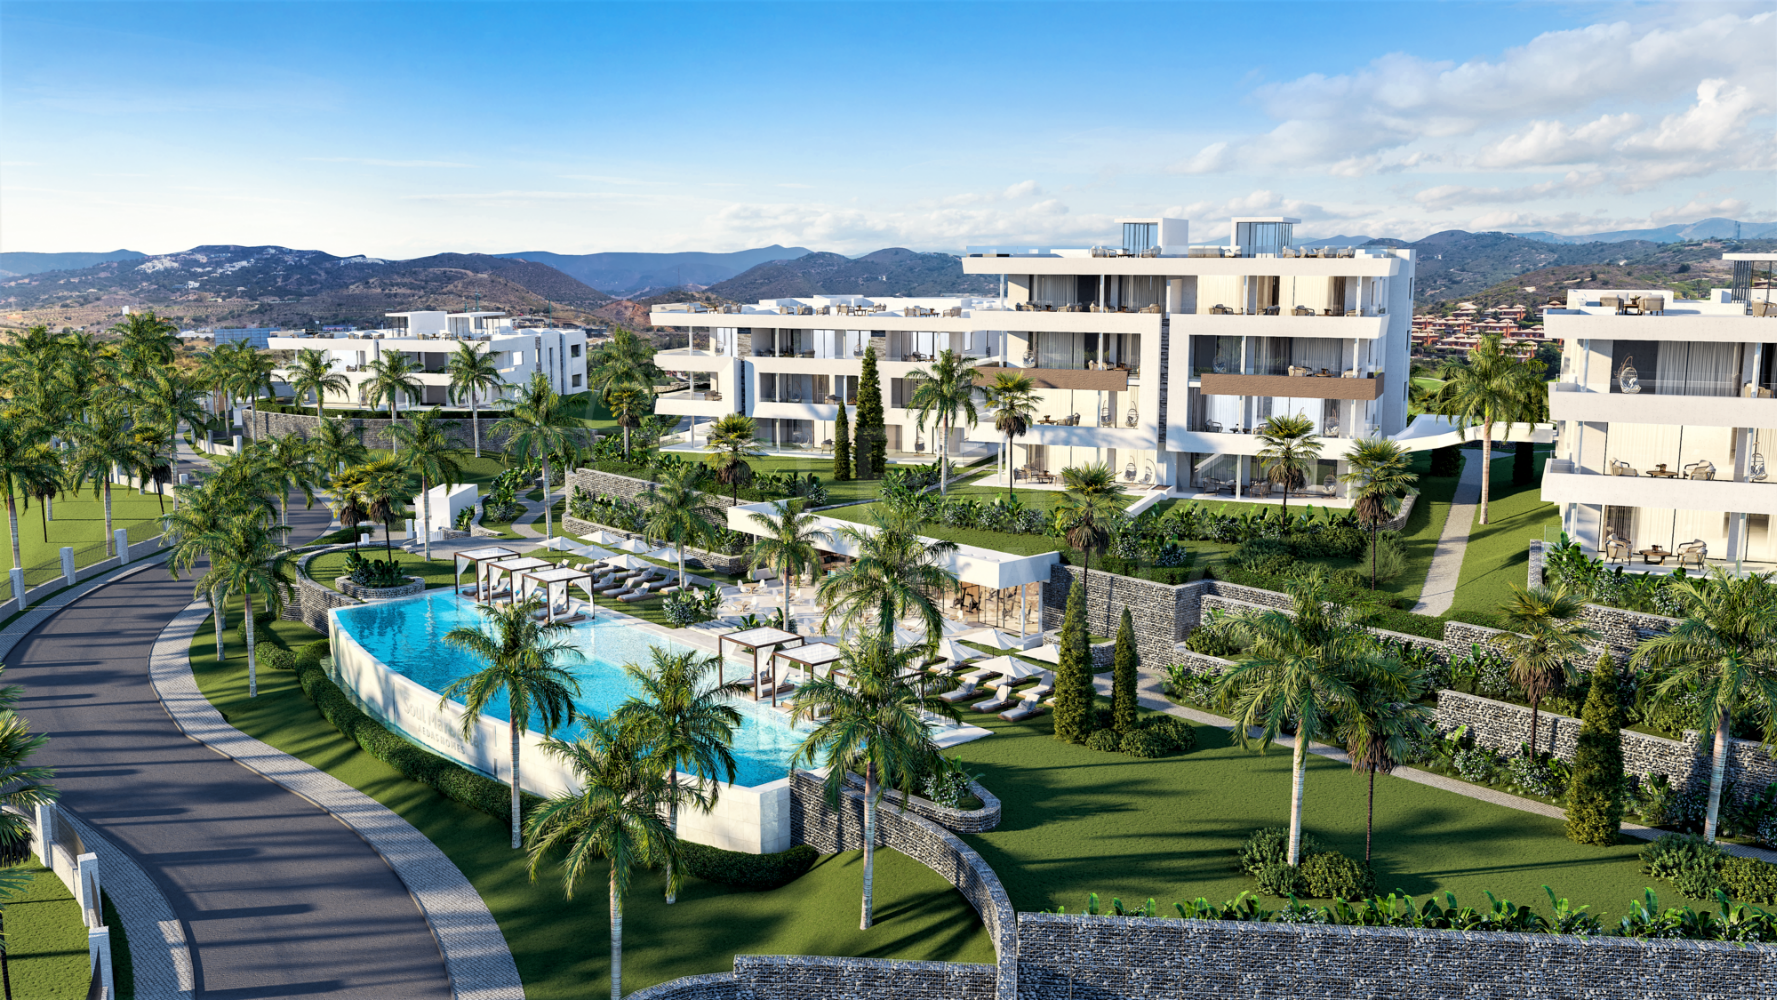 Casa adosada de lujo sobre plano con piscina privada en venta en Soul Marbella, Santa Clara